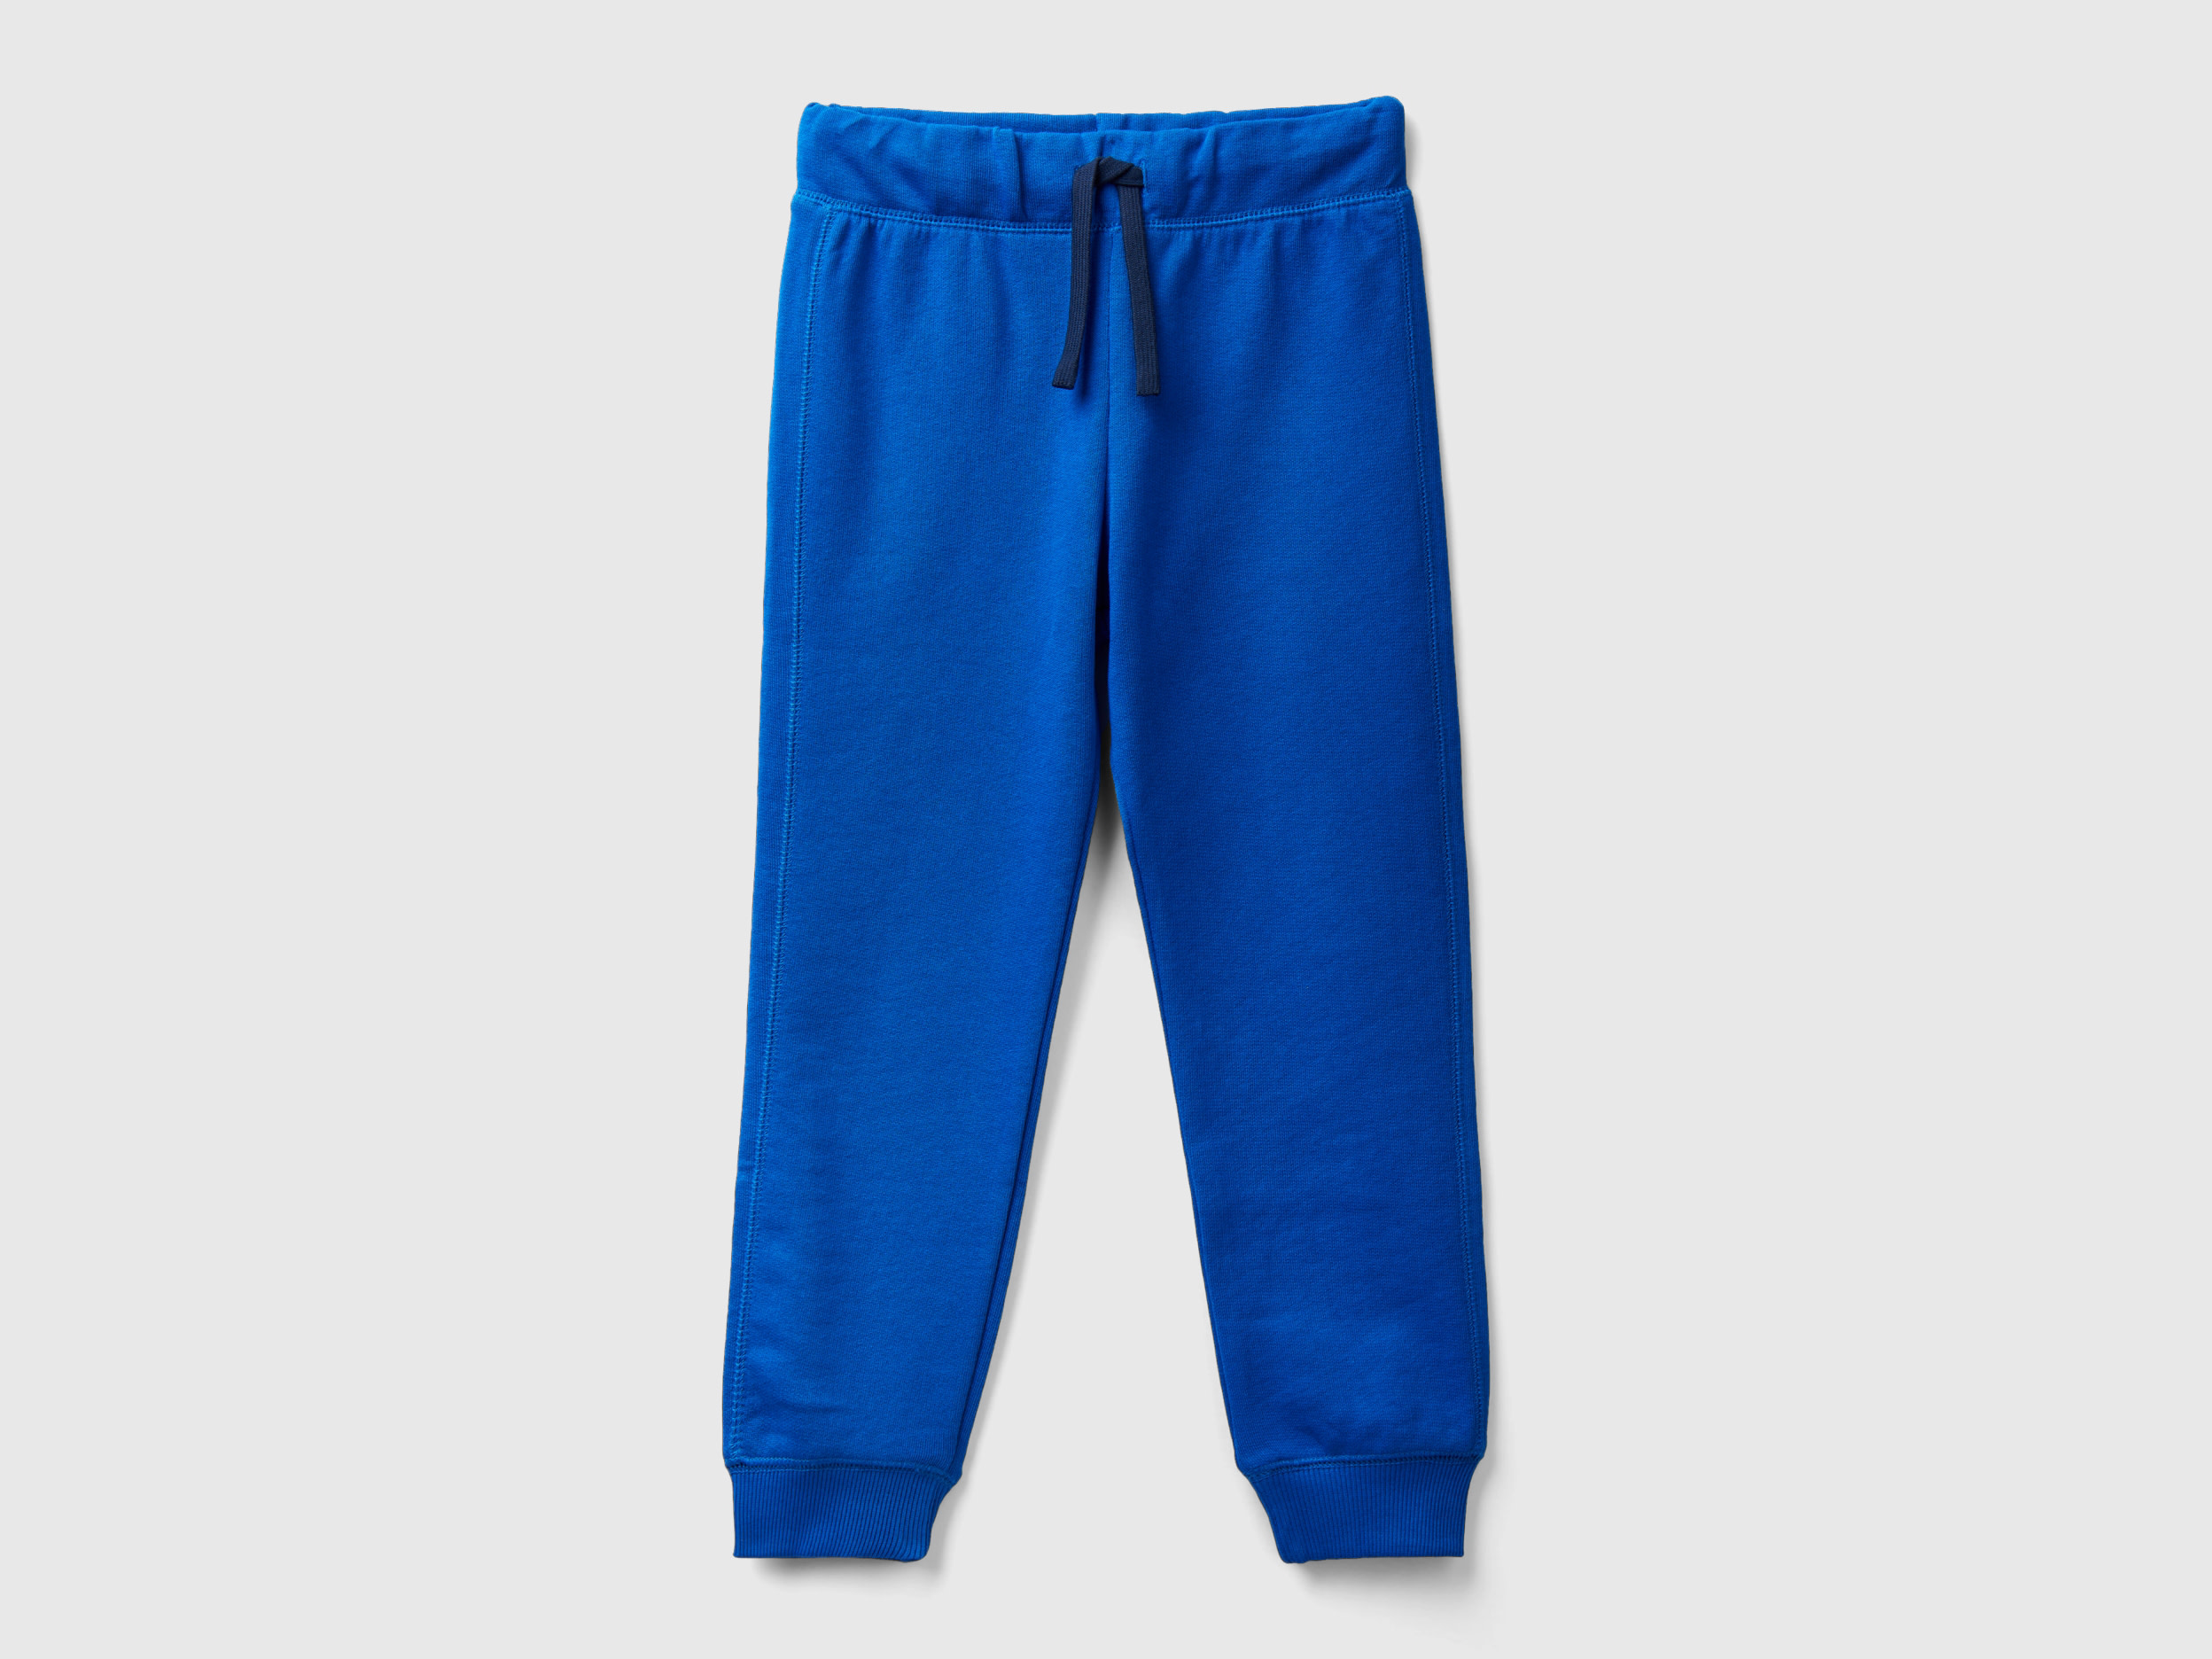 Benetton, 100% Cotton Sweatpants, size 3XL, Bright Blue, Kids